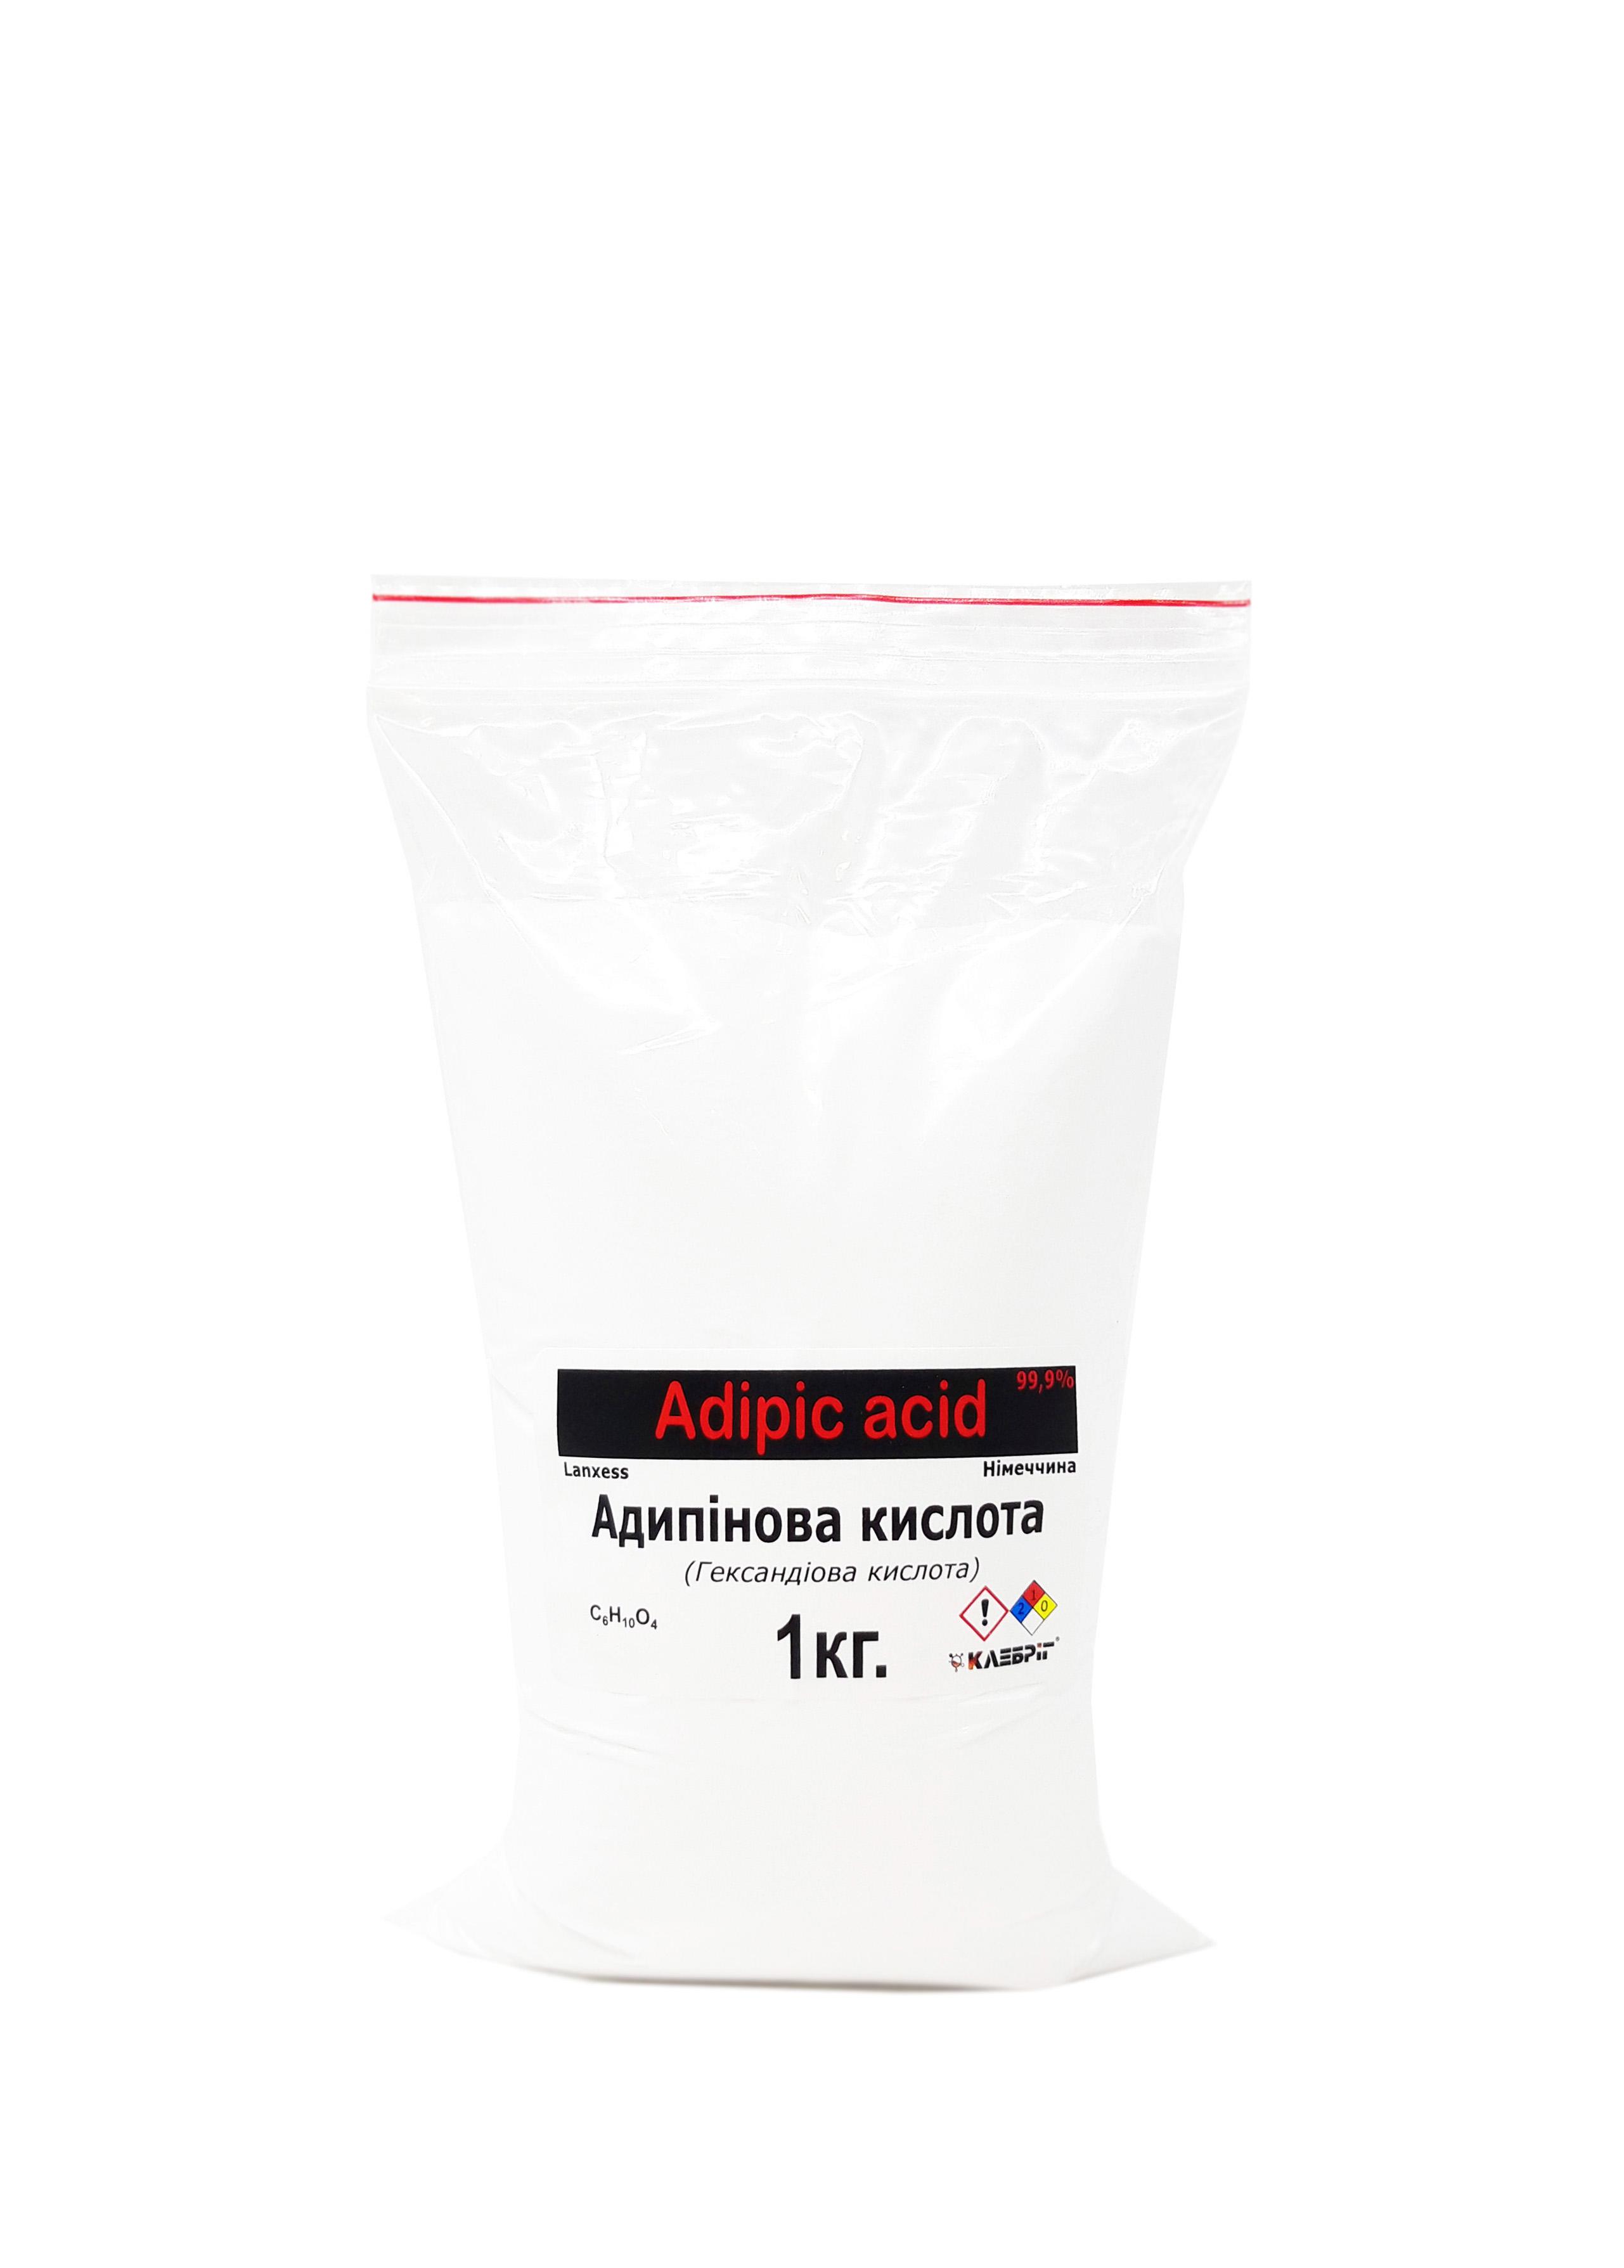 Адипінова кислота Klebrig Гександіова кислота Німеччина 1 кг (АДПН-1)